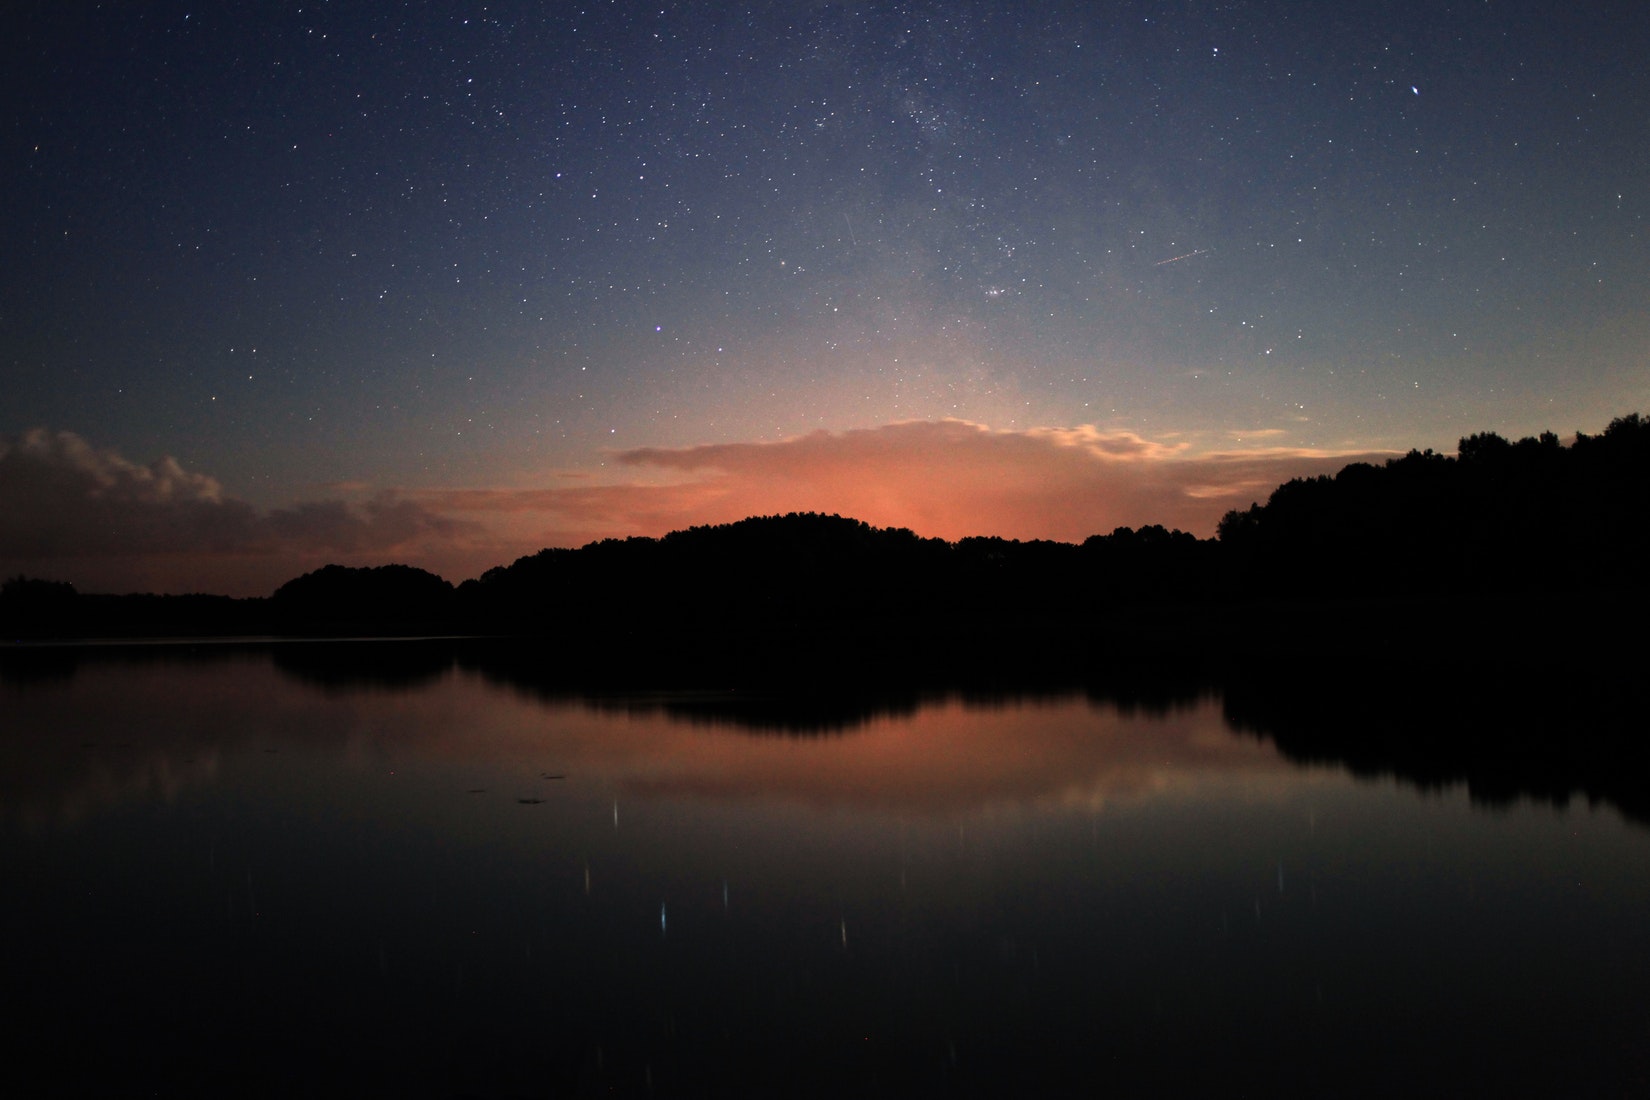 Sonnenuntergang mit Reflexion der Bäume im See - Nachtlinsen